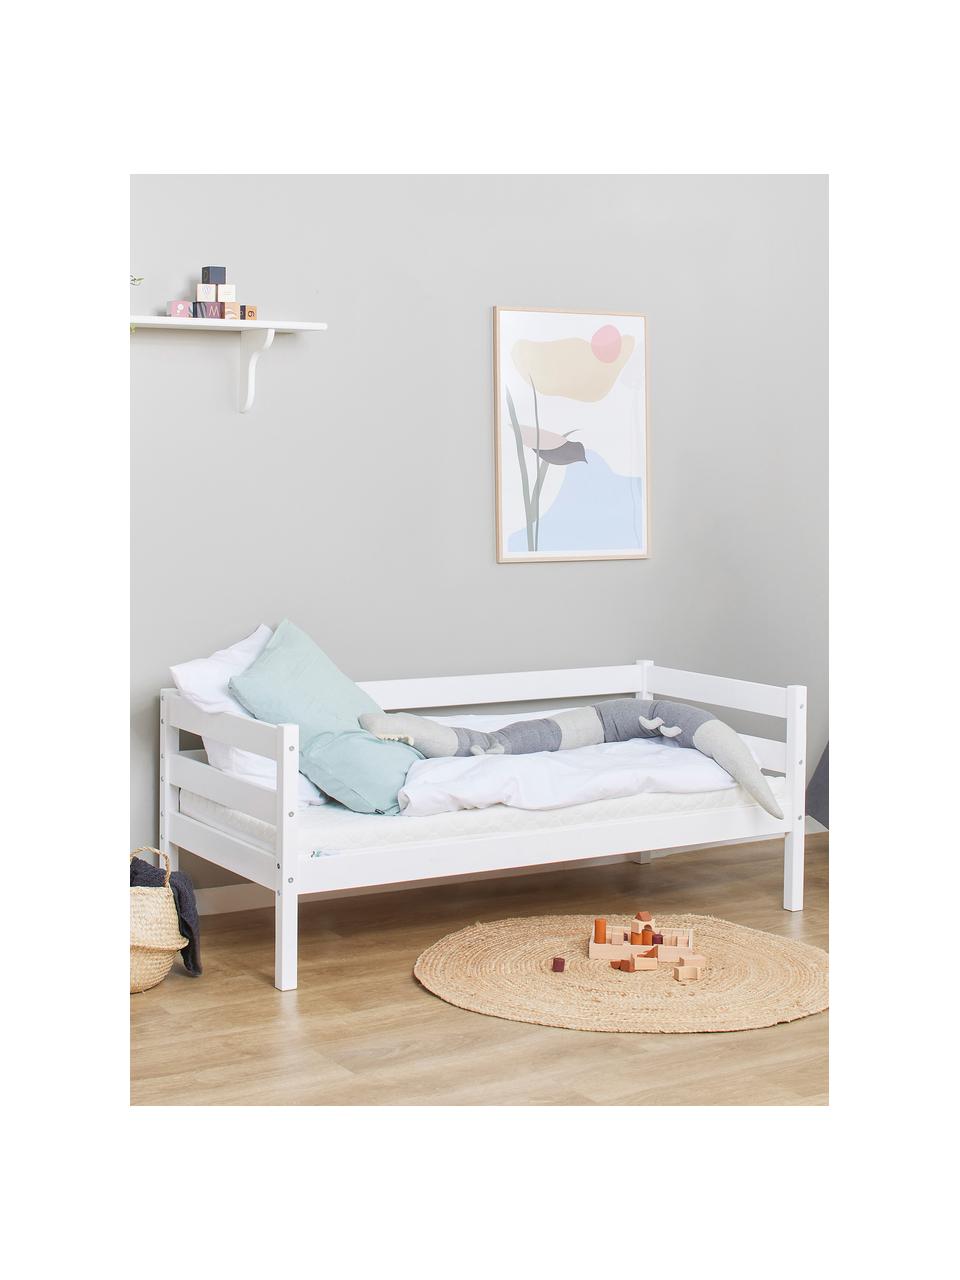 Kinderbett Eco Comfort aus Kiefernholz, 70 x 160 cm, Massives Kiefernholz, FSC-zertifiziert, Schichtholz, Kiefernholz, weiß lackiert, B 70 x L 160 cm